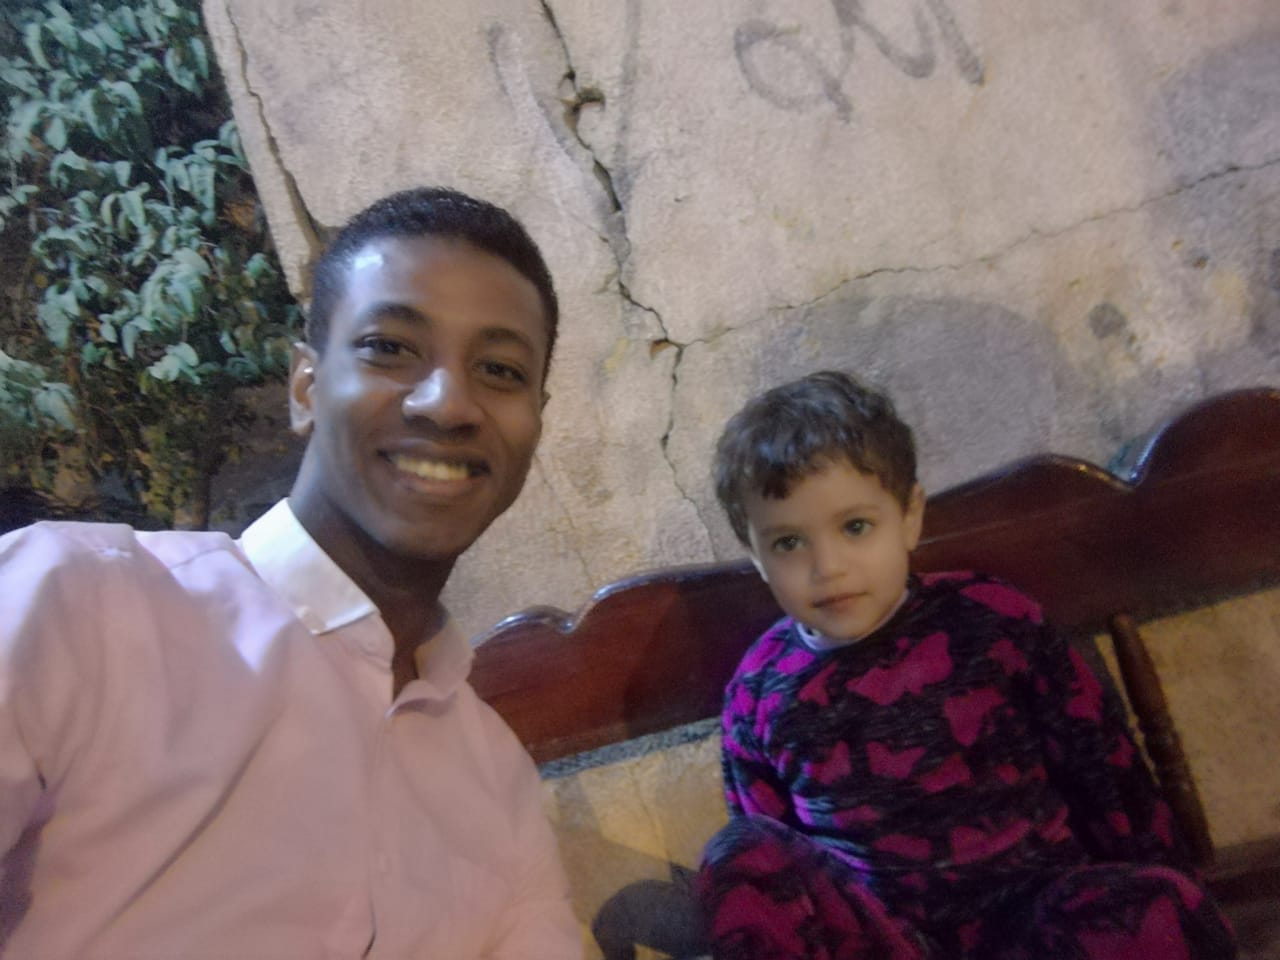 الطفل أحمد مع محرر اليوم السابع